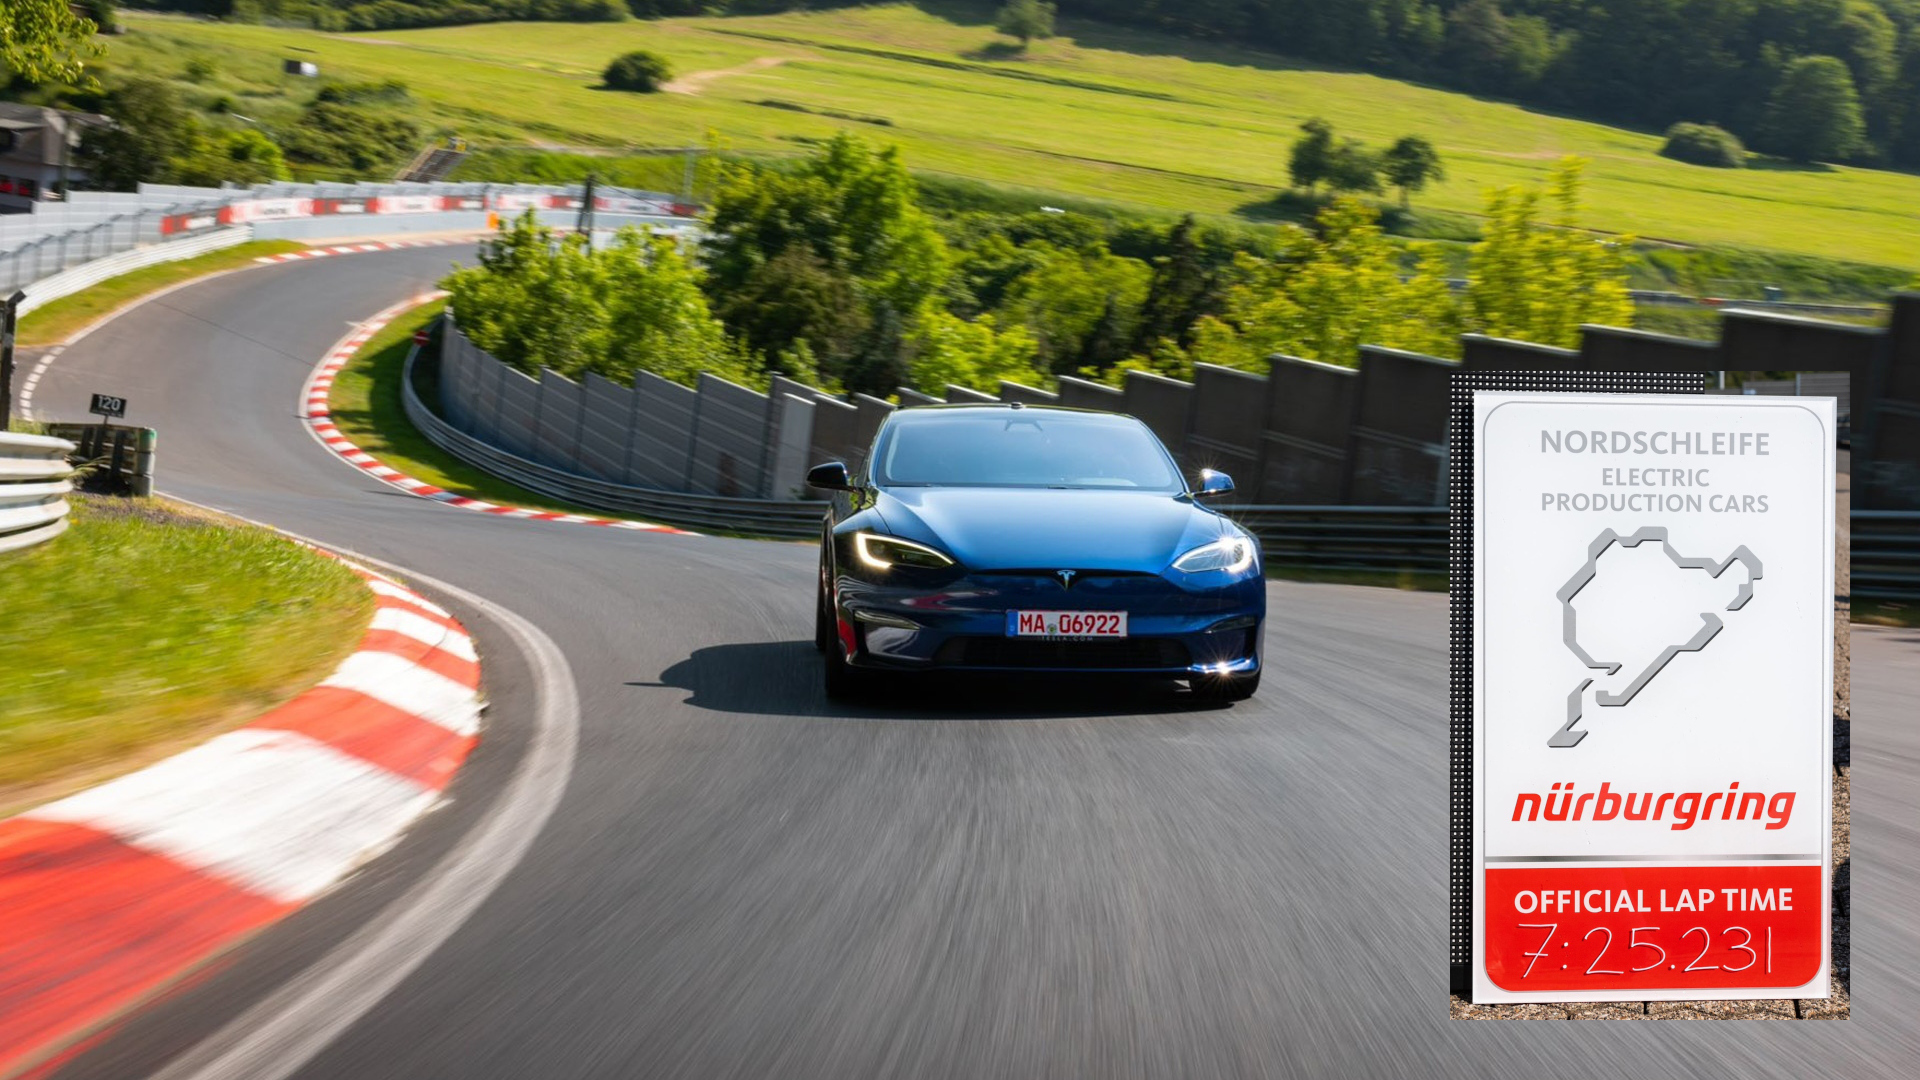 La Tesla Model S stritola la Porsche Taycan al Nürburgring